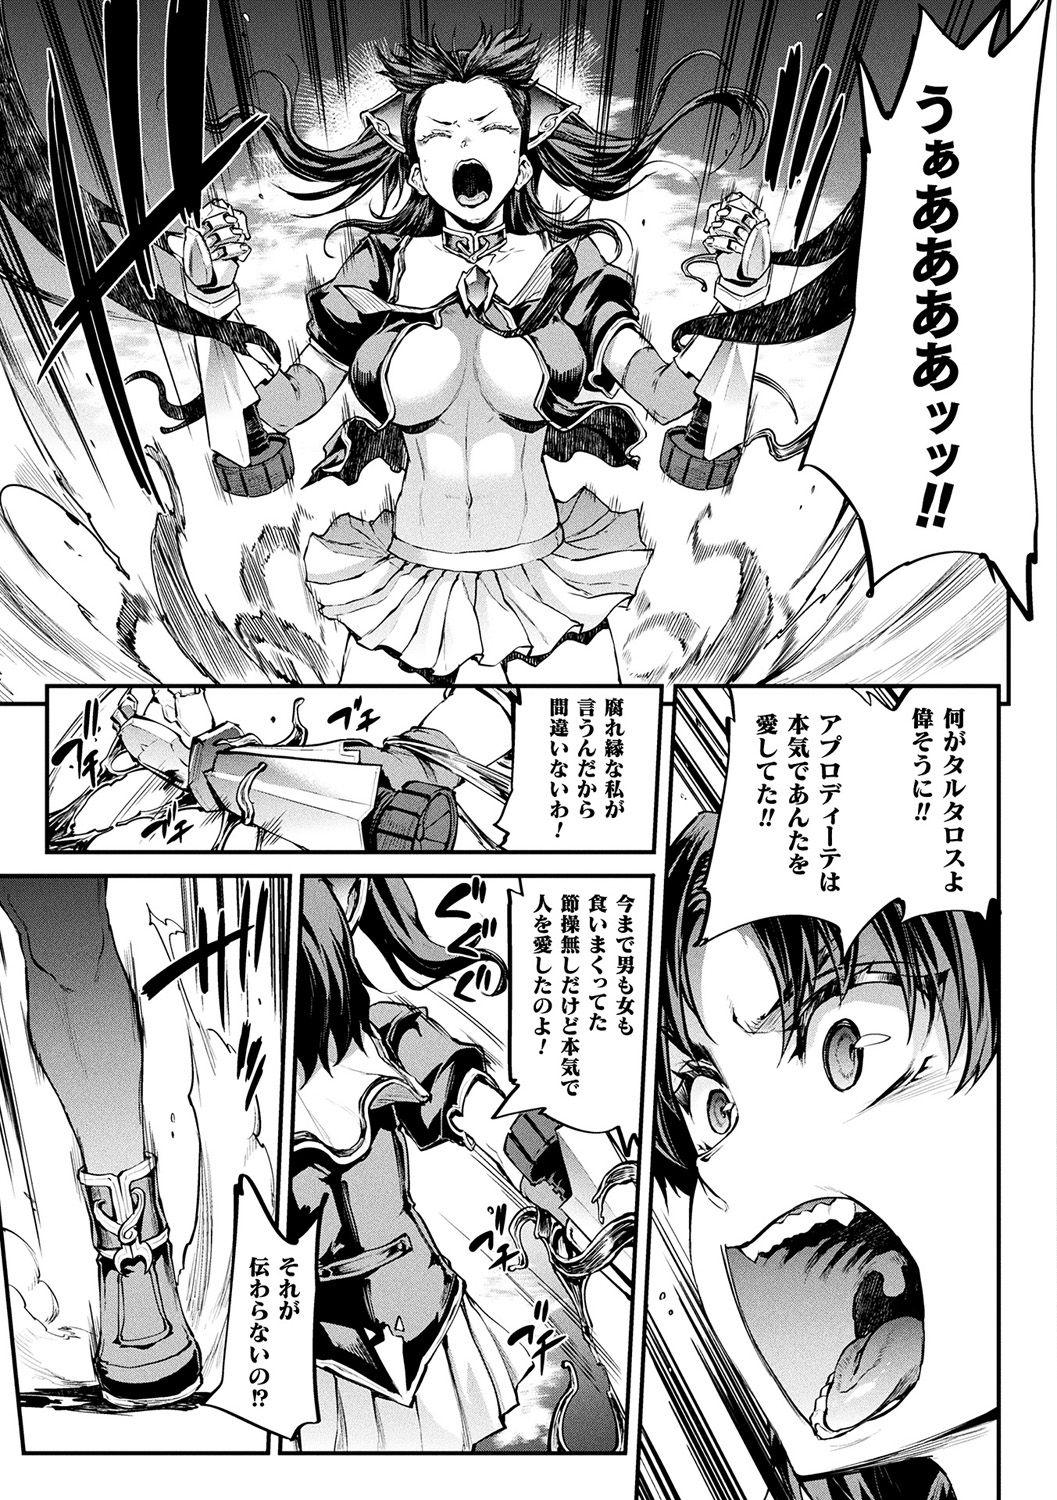 [Erect Sawaru] Raikou Shinki Igis Magia II -PANDRA saga 3rd ignition- + Denshi Shoseki Tokuten Digital Poster [Digital] 188